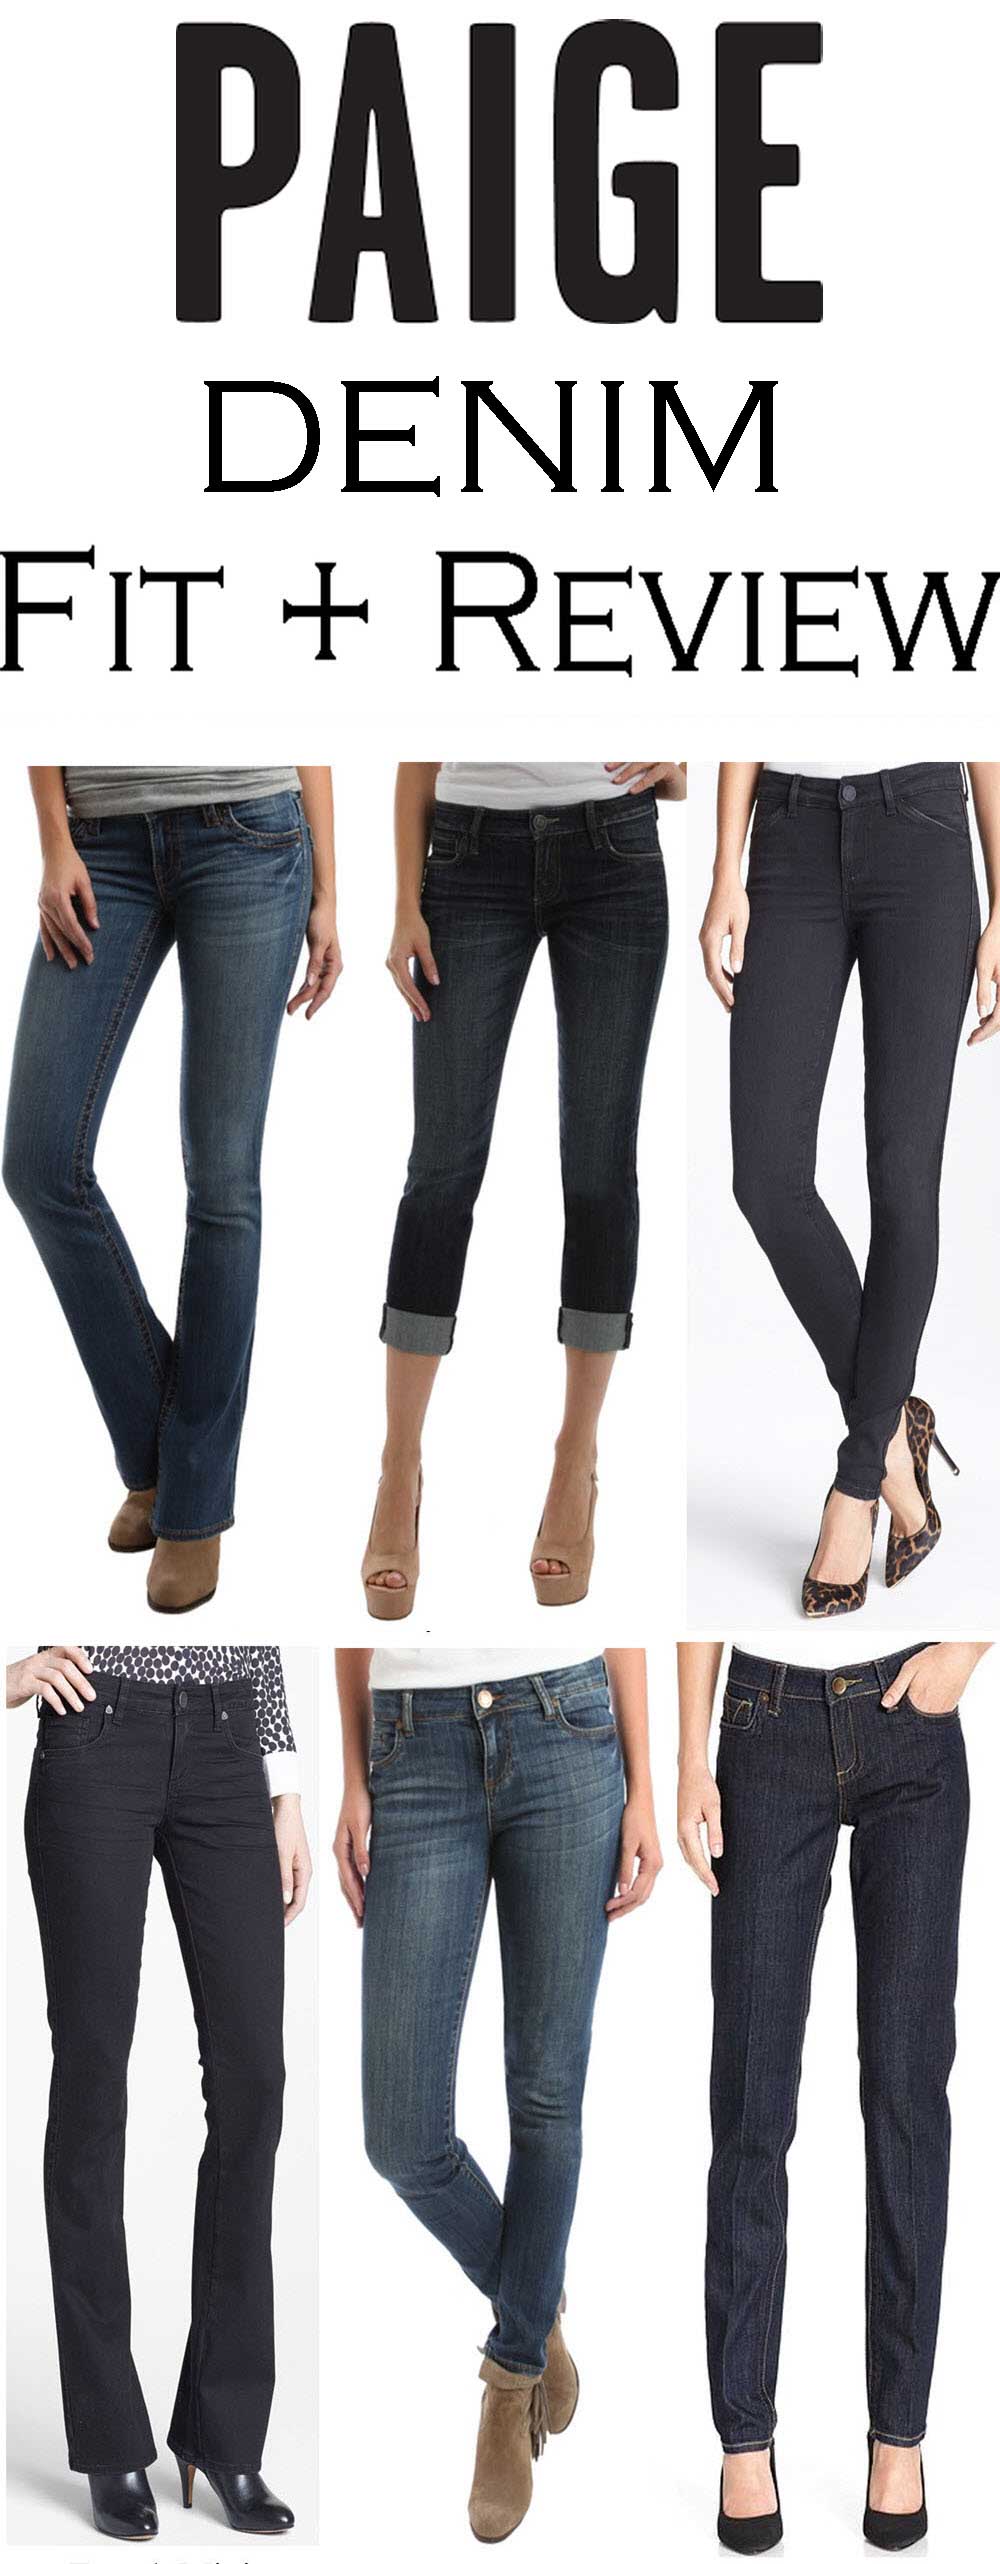 Paige Denim Fit Review + How do Paige Jeans Fit? #denim #fashionblog #fashionblogger #denim #jeansreview #denimreview #paigedenim